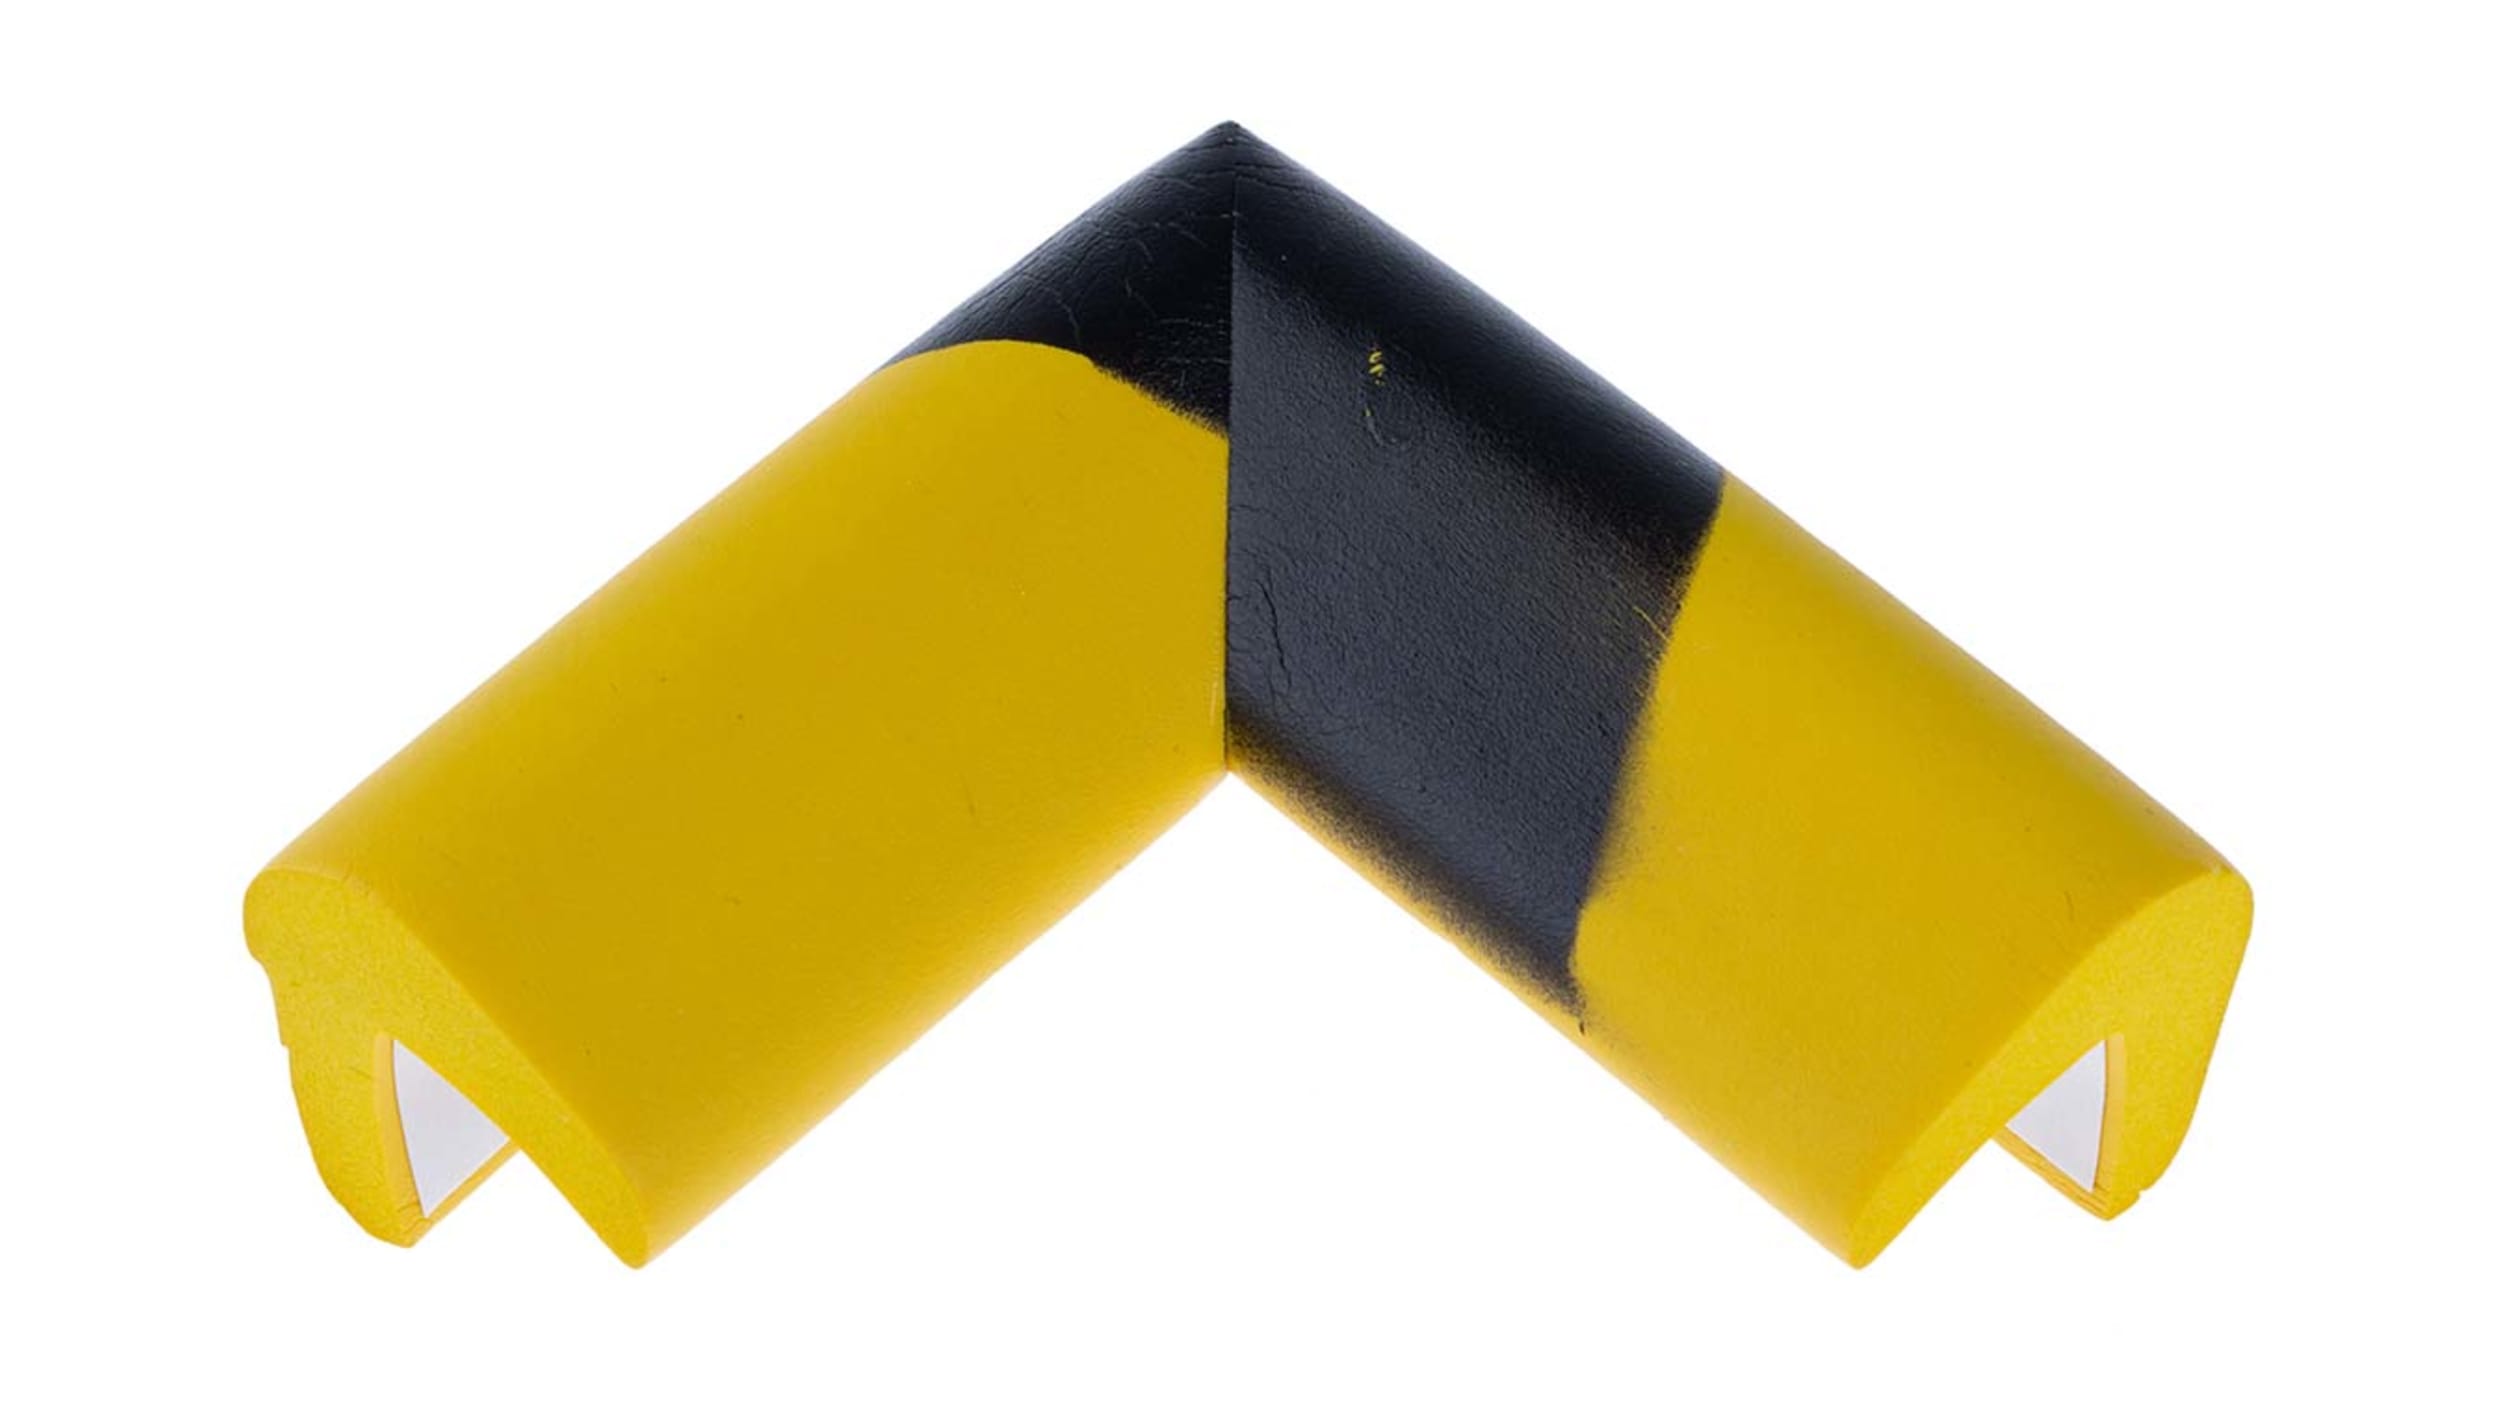 RS PRO Nitril-Gummi Stoßschutz für den Einsatz auf Ständer, Rack